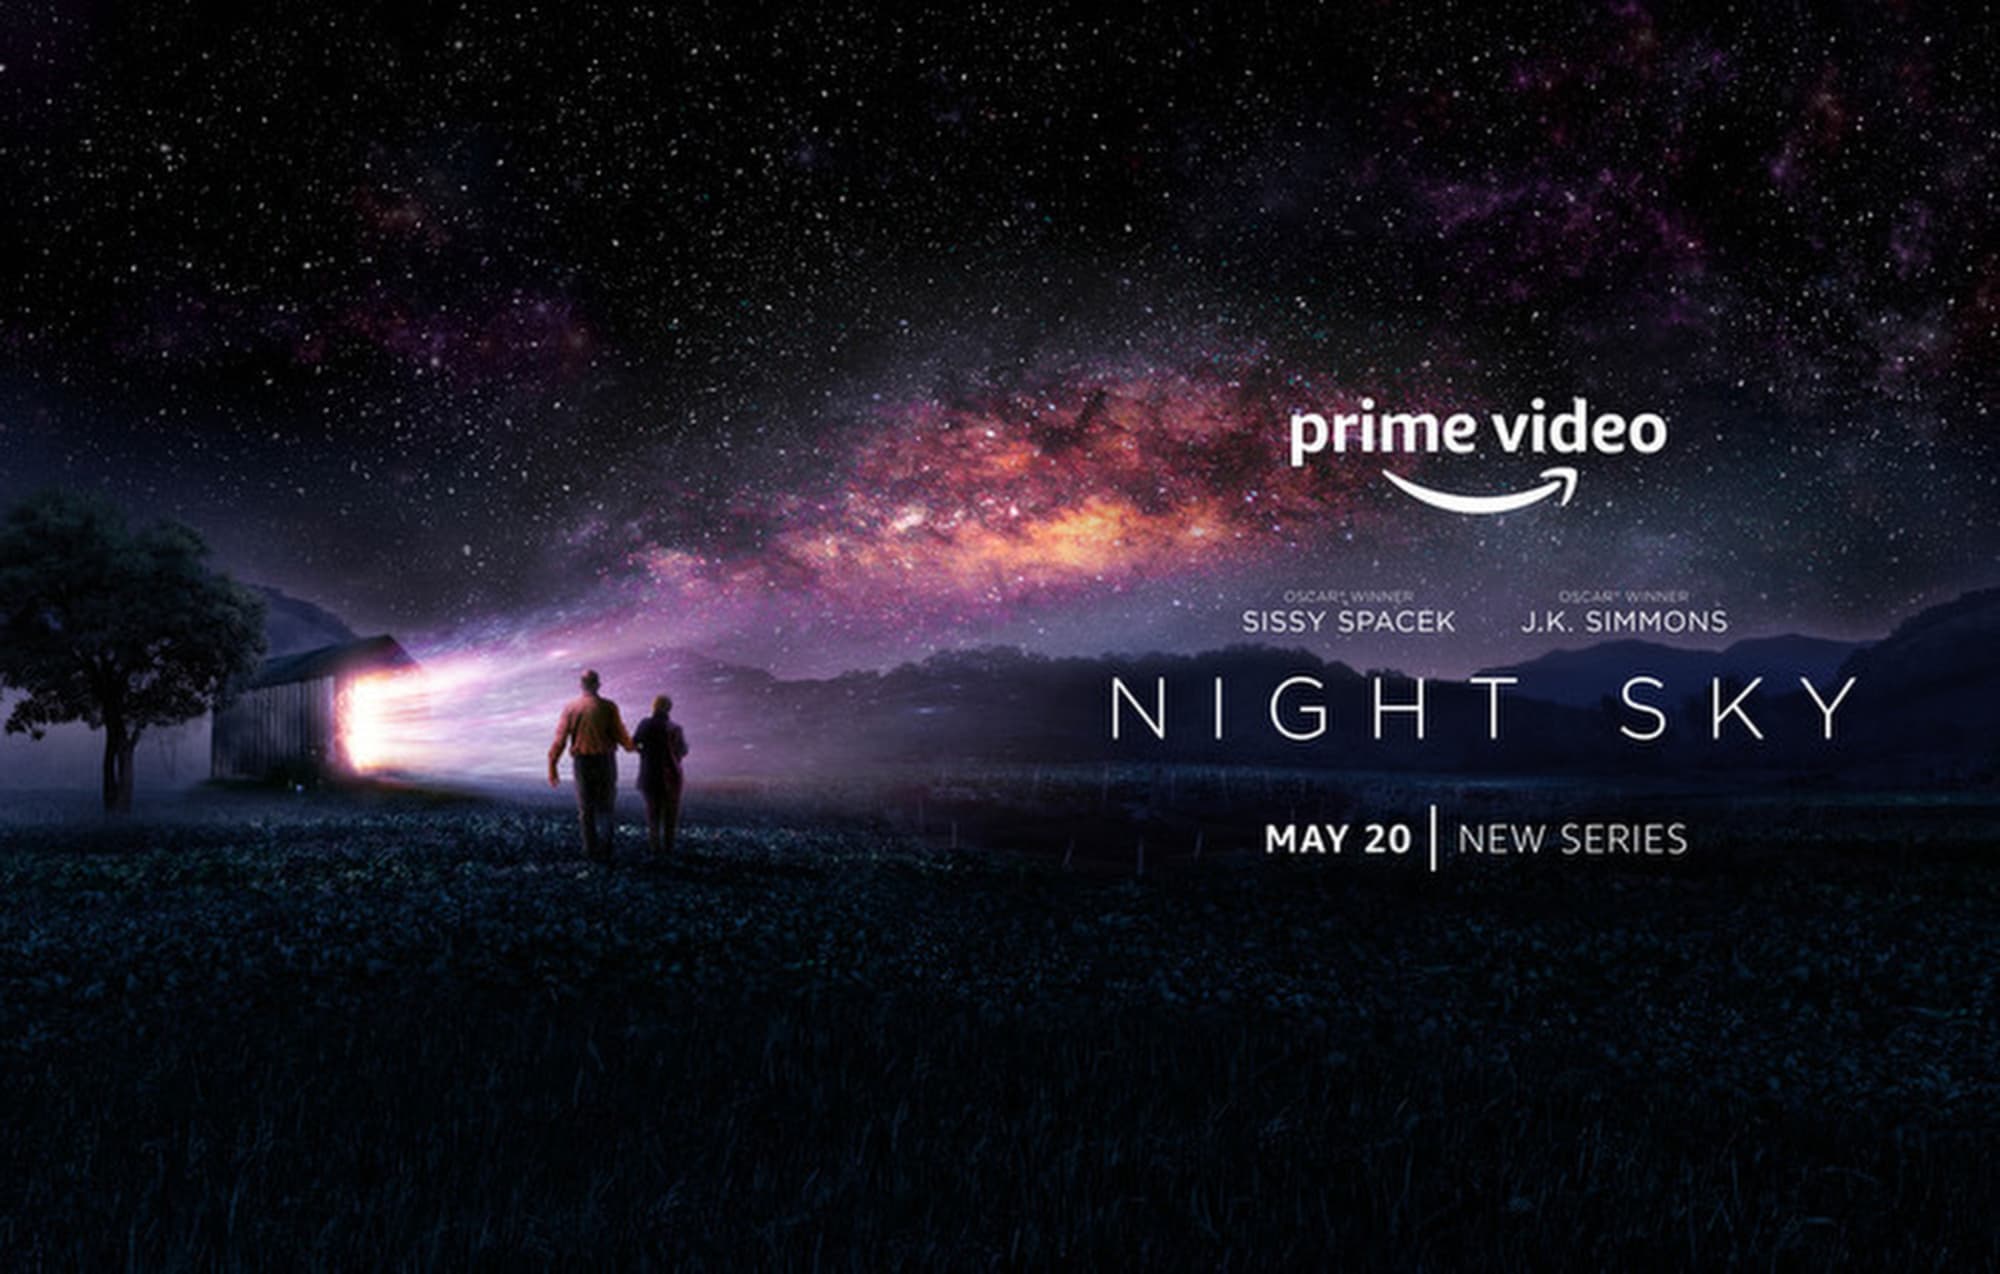 I 5 migliori film e spettacoli su Prime Video questo fine settimana: Night Sky